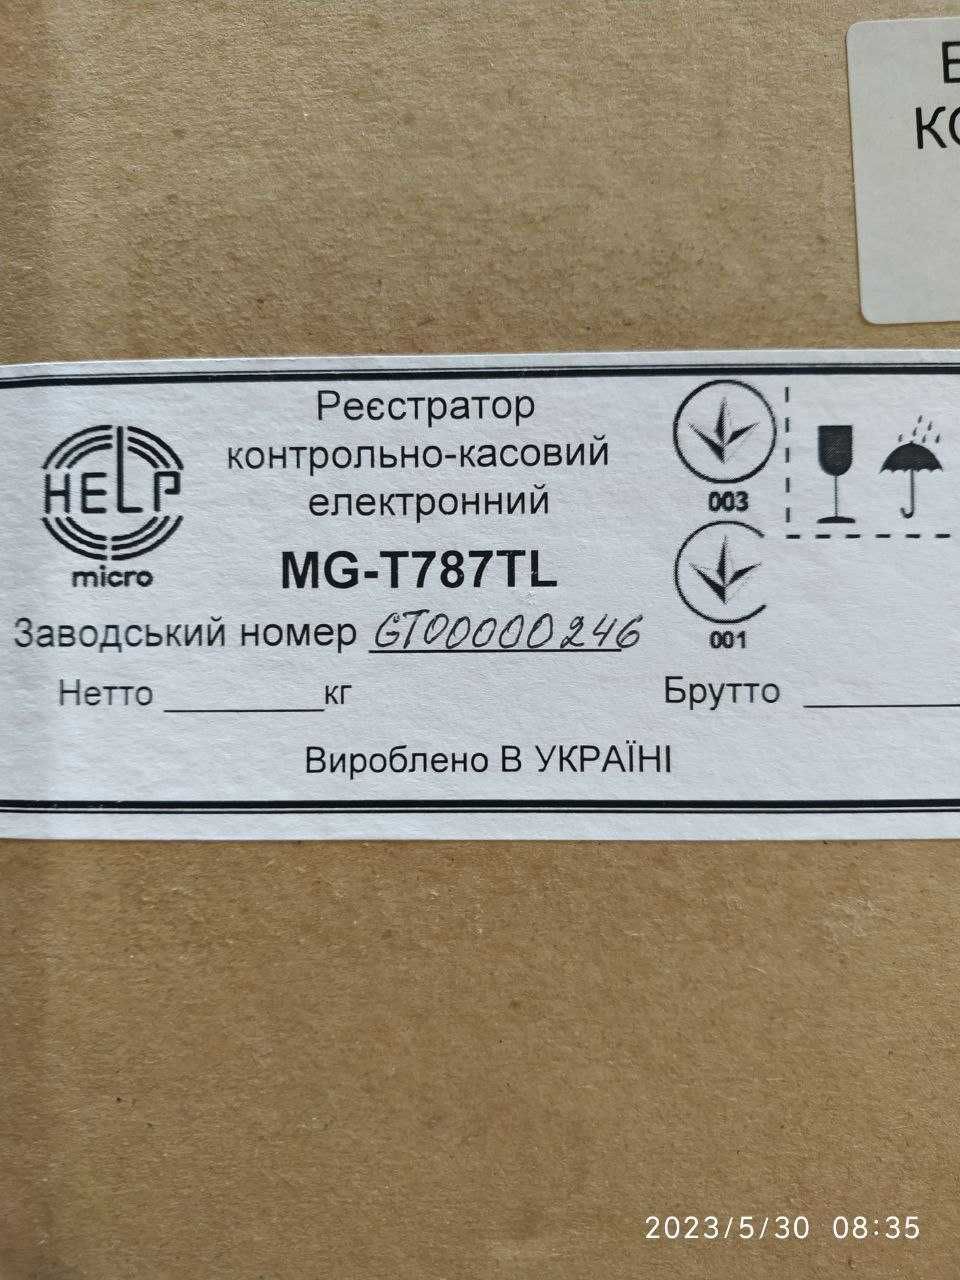 Електронний контрольно-касовий реєстратор MG-T787TL (РРО) НОВИЙ 2019р